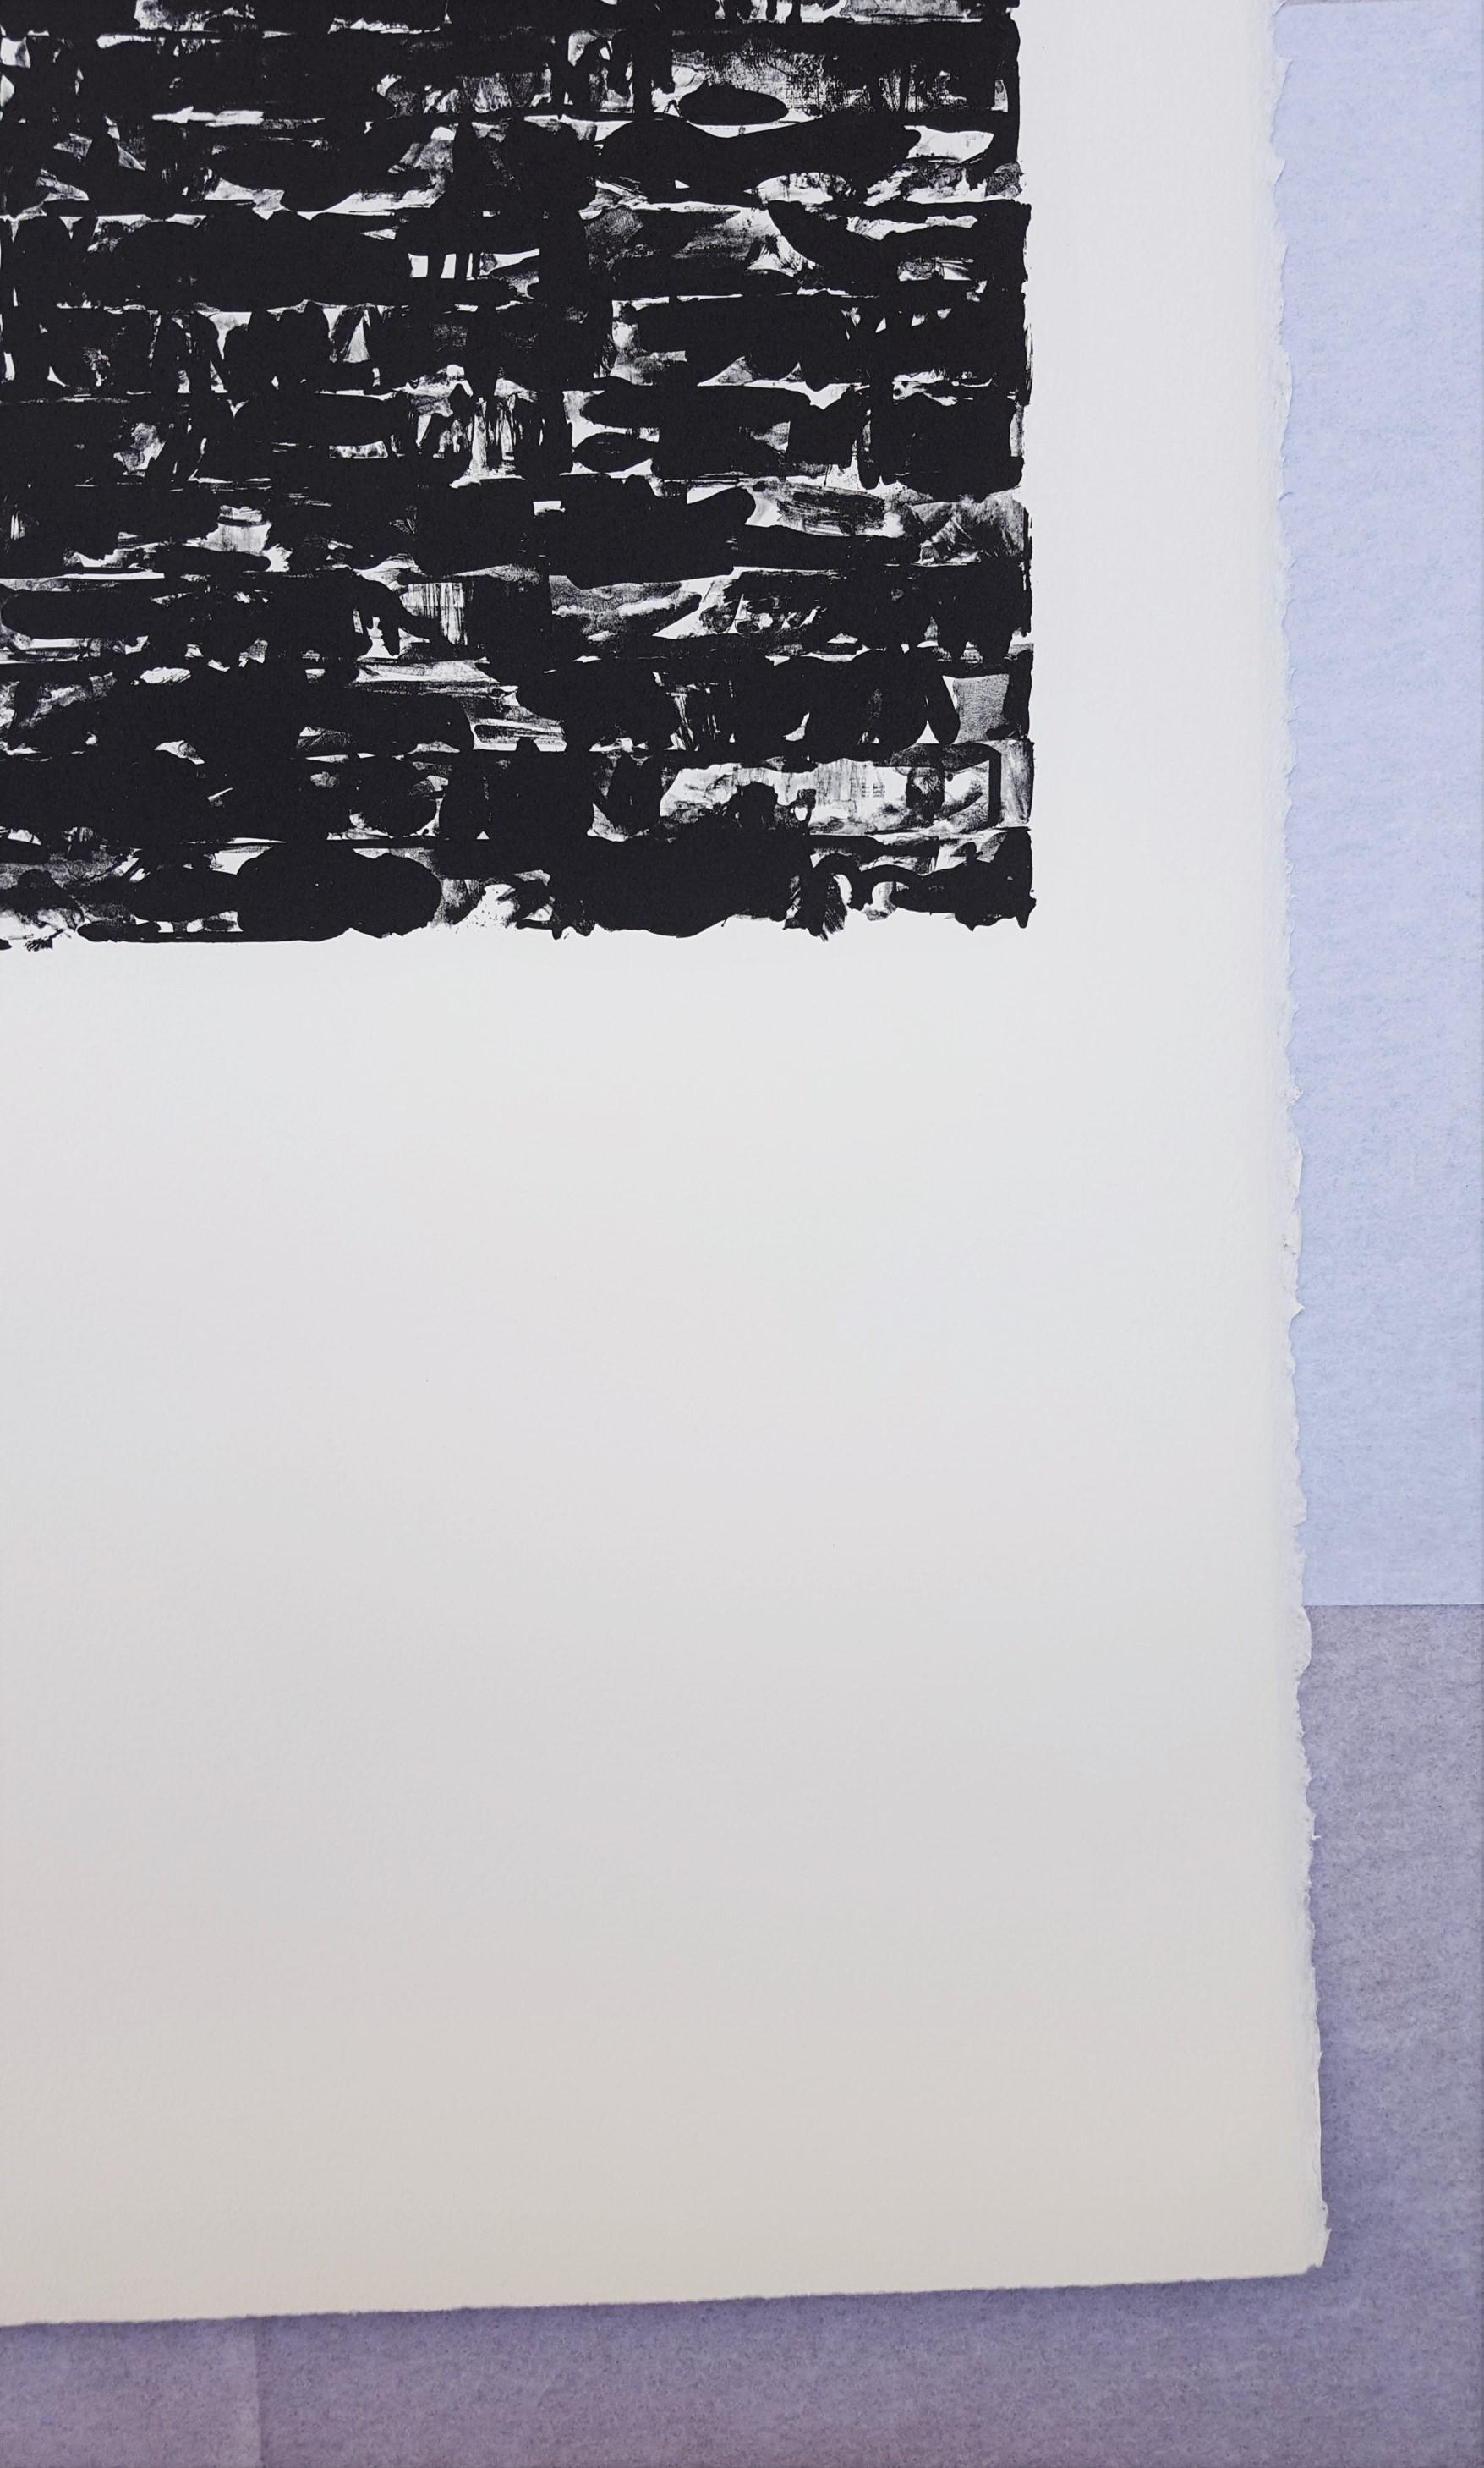 Artist: (after) Jasper Johns (American, 1930-)
Title: 